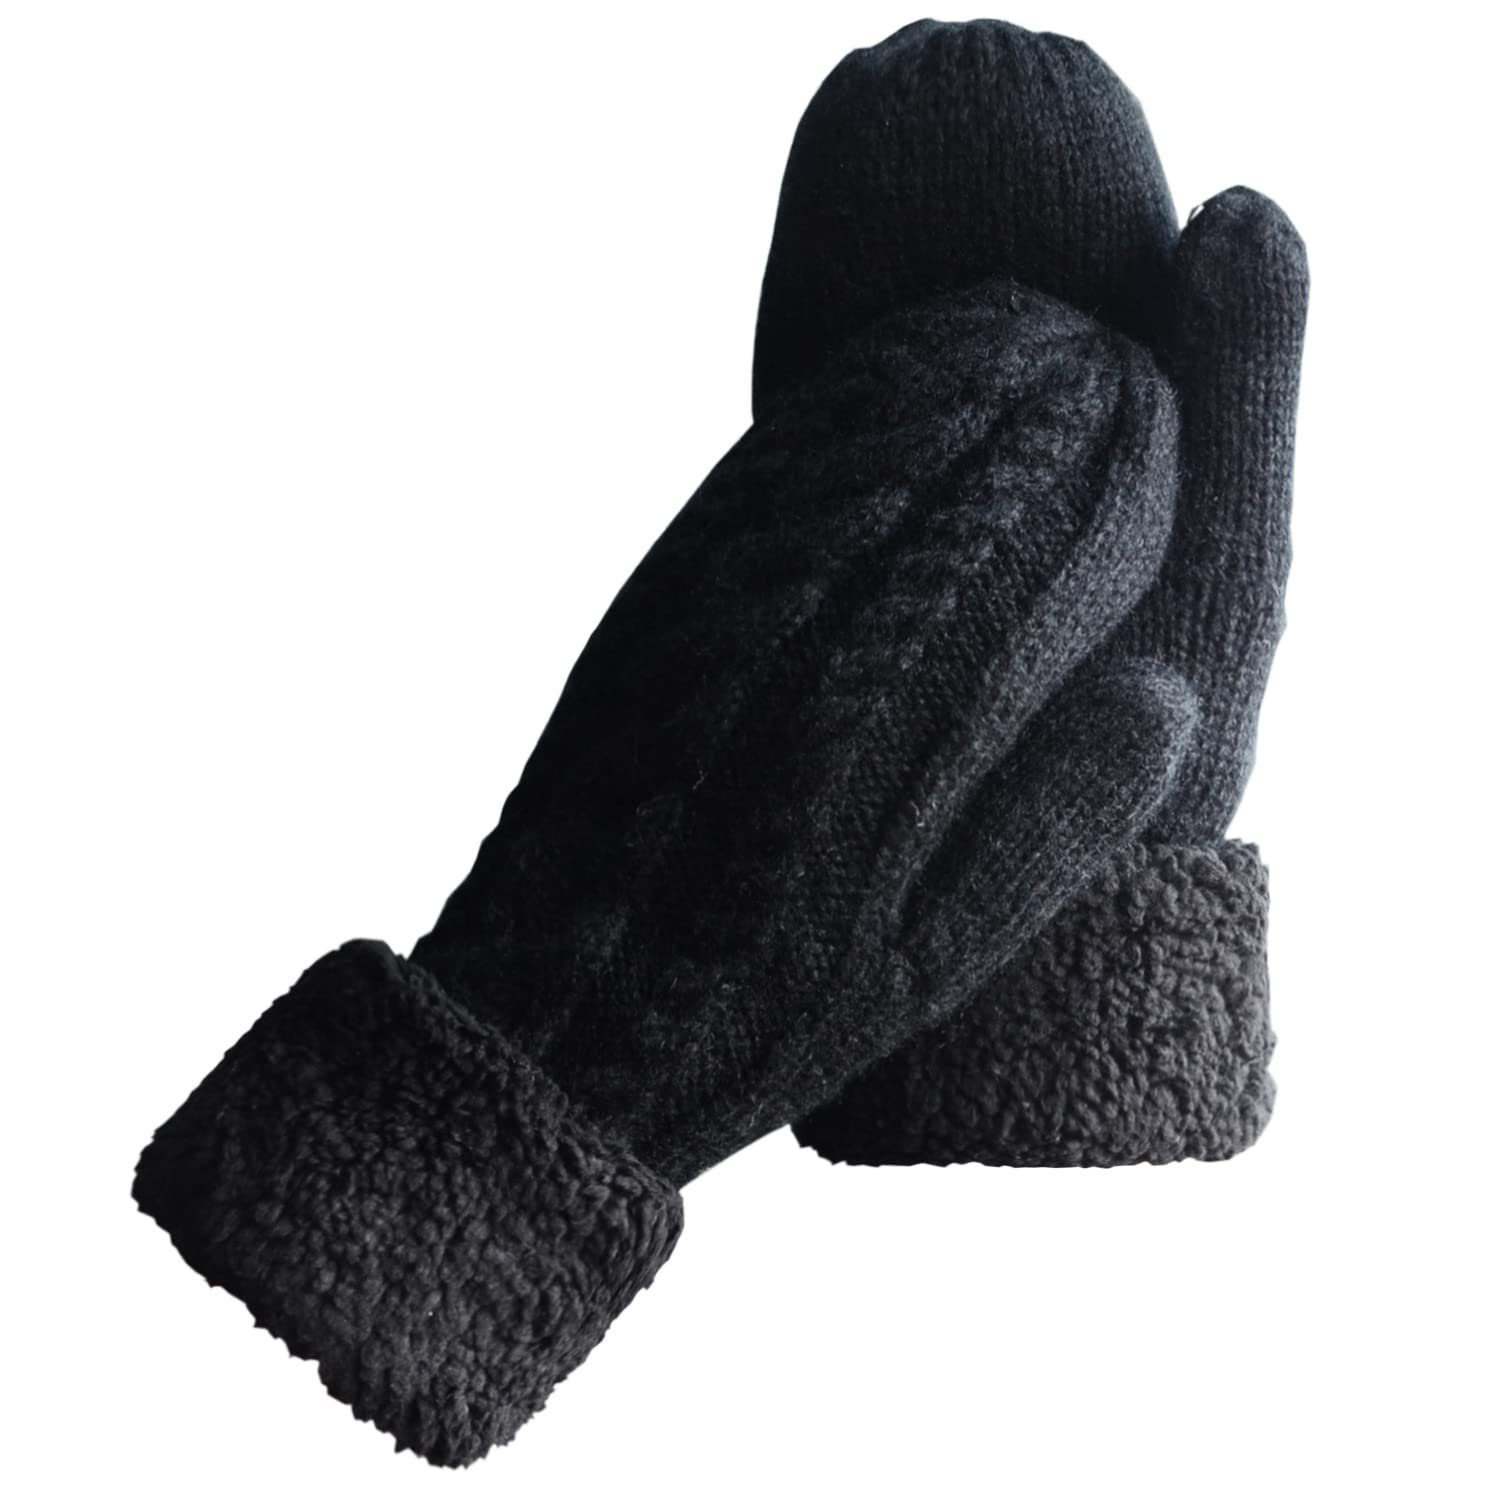 Kasse YYV Strickhandschuhe Damen schwarz Fäustlinge Wolle Strick Dicke Lining,Gemütliche Handschuhe Winterhandschuhe Warm